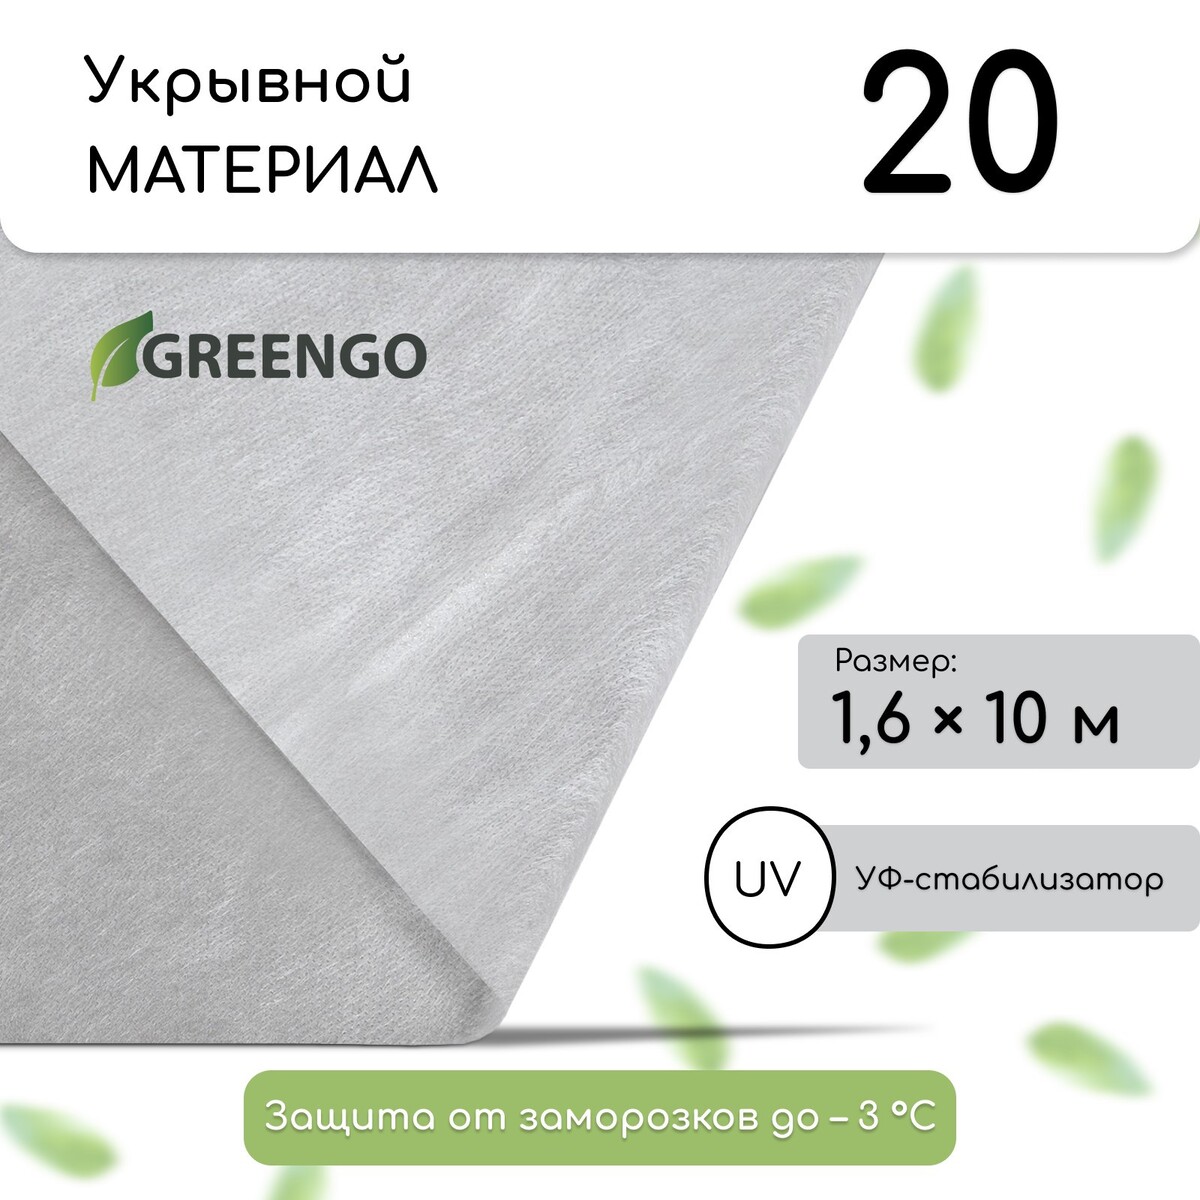 Материал укрывной, 10 × 1.6 м, плотность 20 г/м², спанбонд с уф-стабилизатором, белый, greengo, эконом 20%